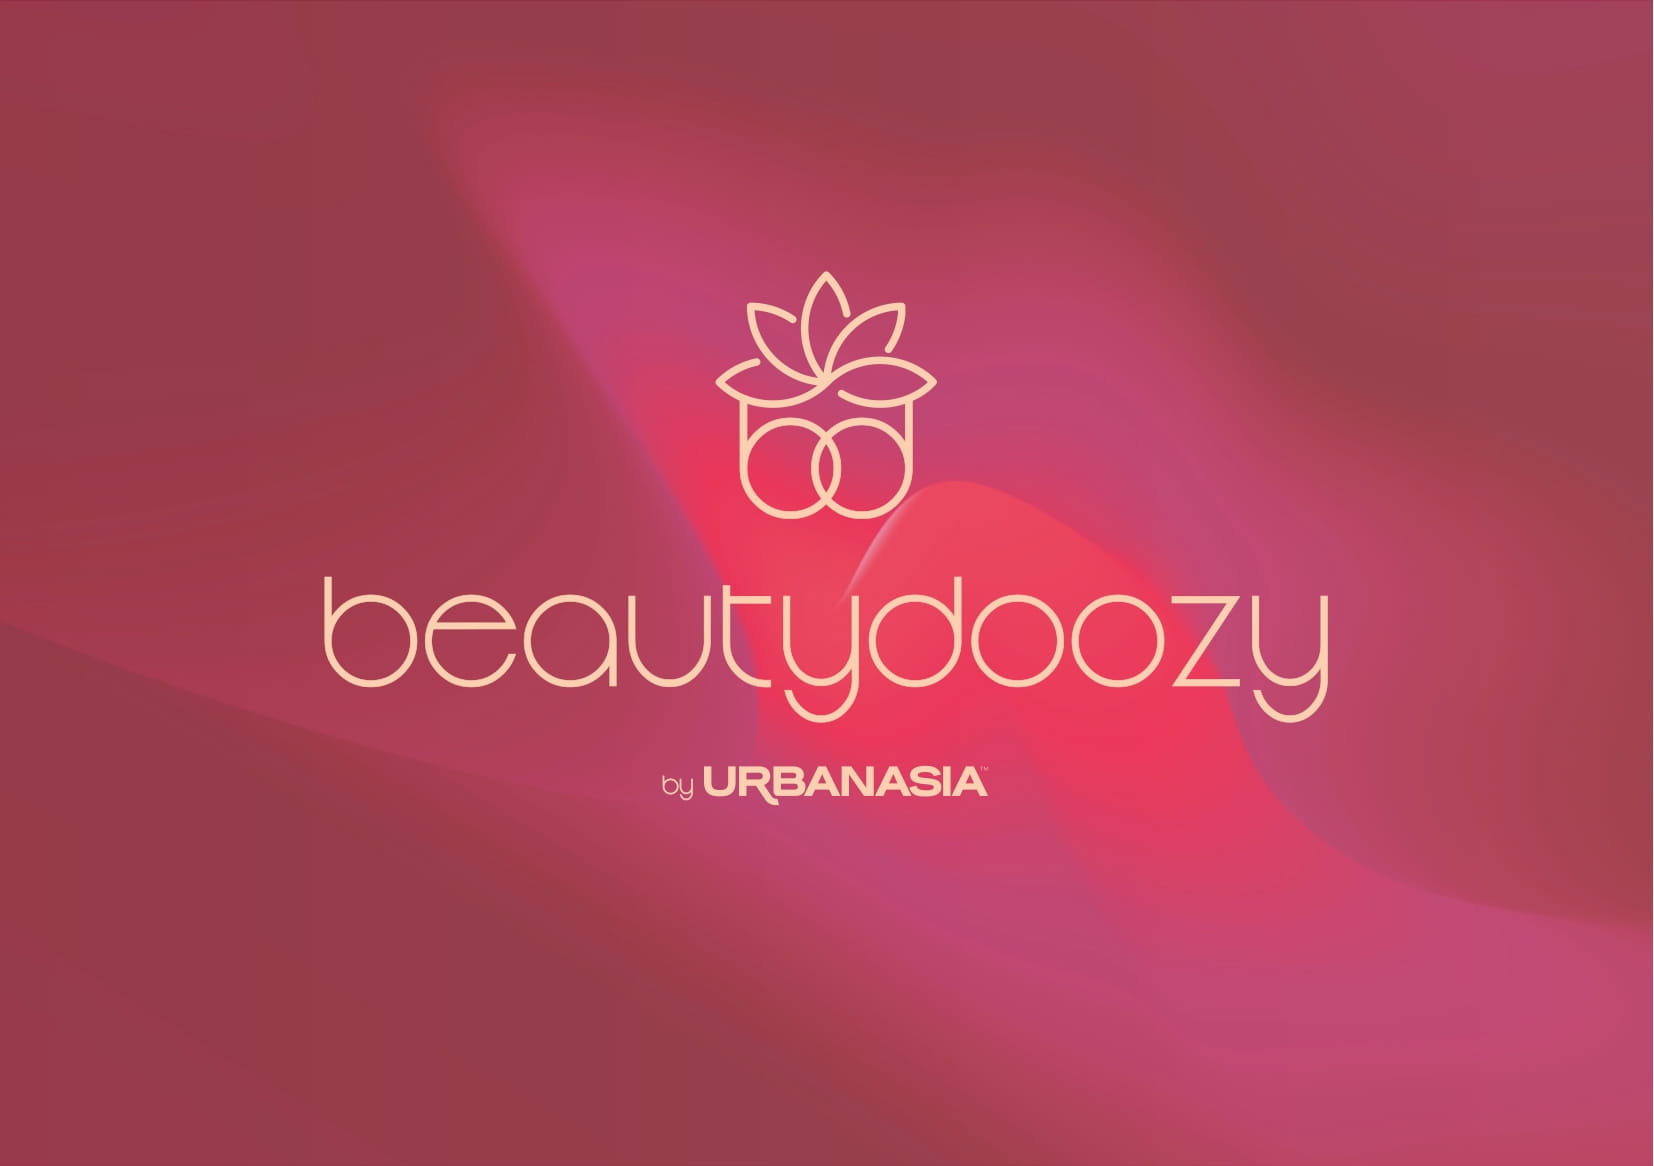 Beautydoozy, Kanal Baru Urbanasia soal Perempuan dan Kecantikan